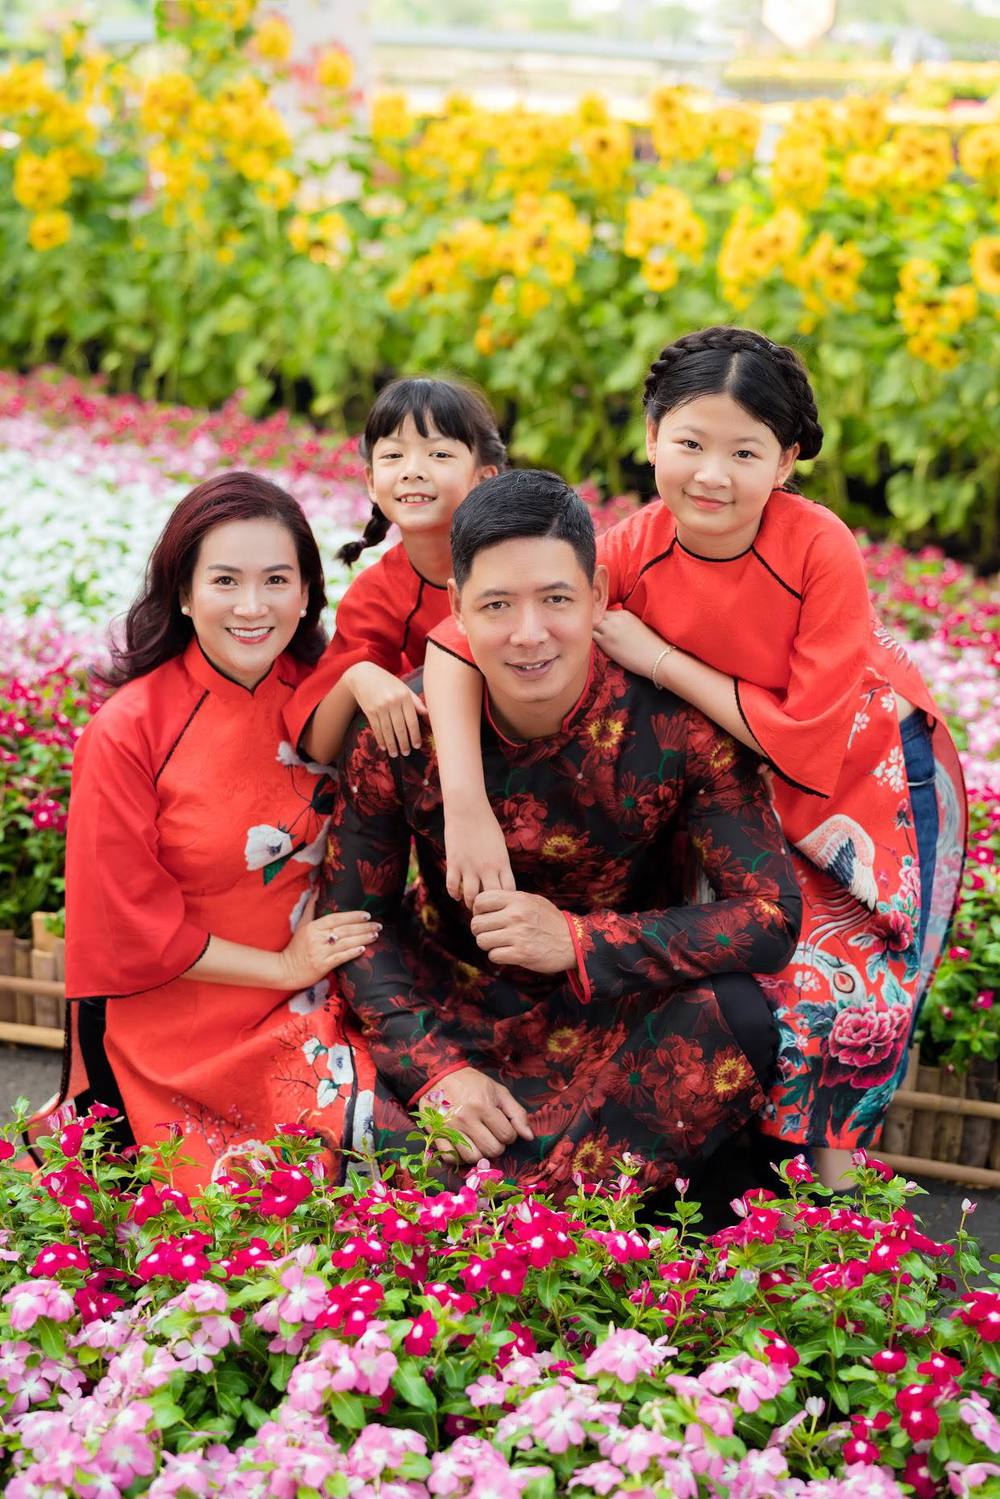  
Gia đình 4 thành viên đầy hạnh phúc của Bình Minh. (Ảnh: FB Bình Minh) - Tin sao Viet - Tin tuc sao Viet - Scandal sao Viet - Tin tuc cua Sao - Tin cua Sao